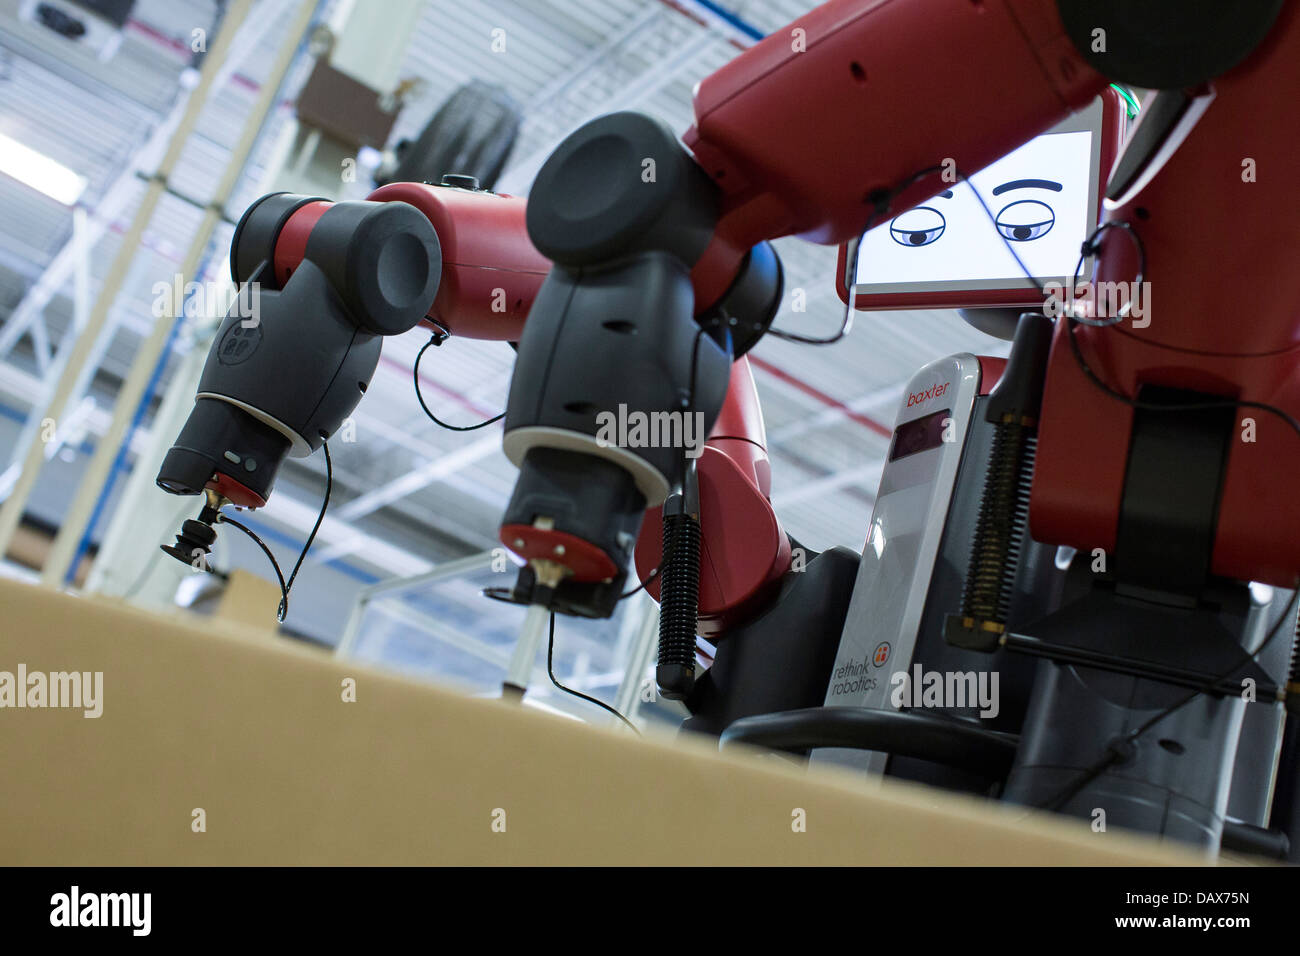 Baxter, le robot fait par repenser la robotique à l'usine de moulage plastique Groupe Rodon. Banque D'Images